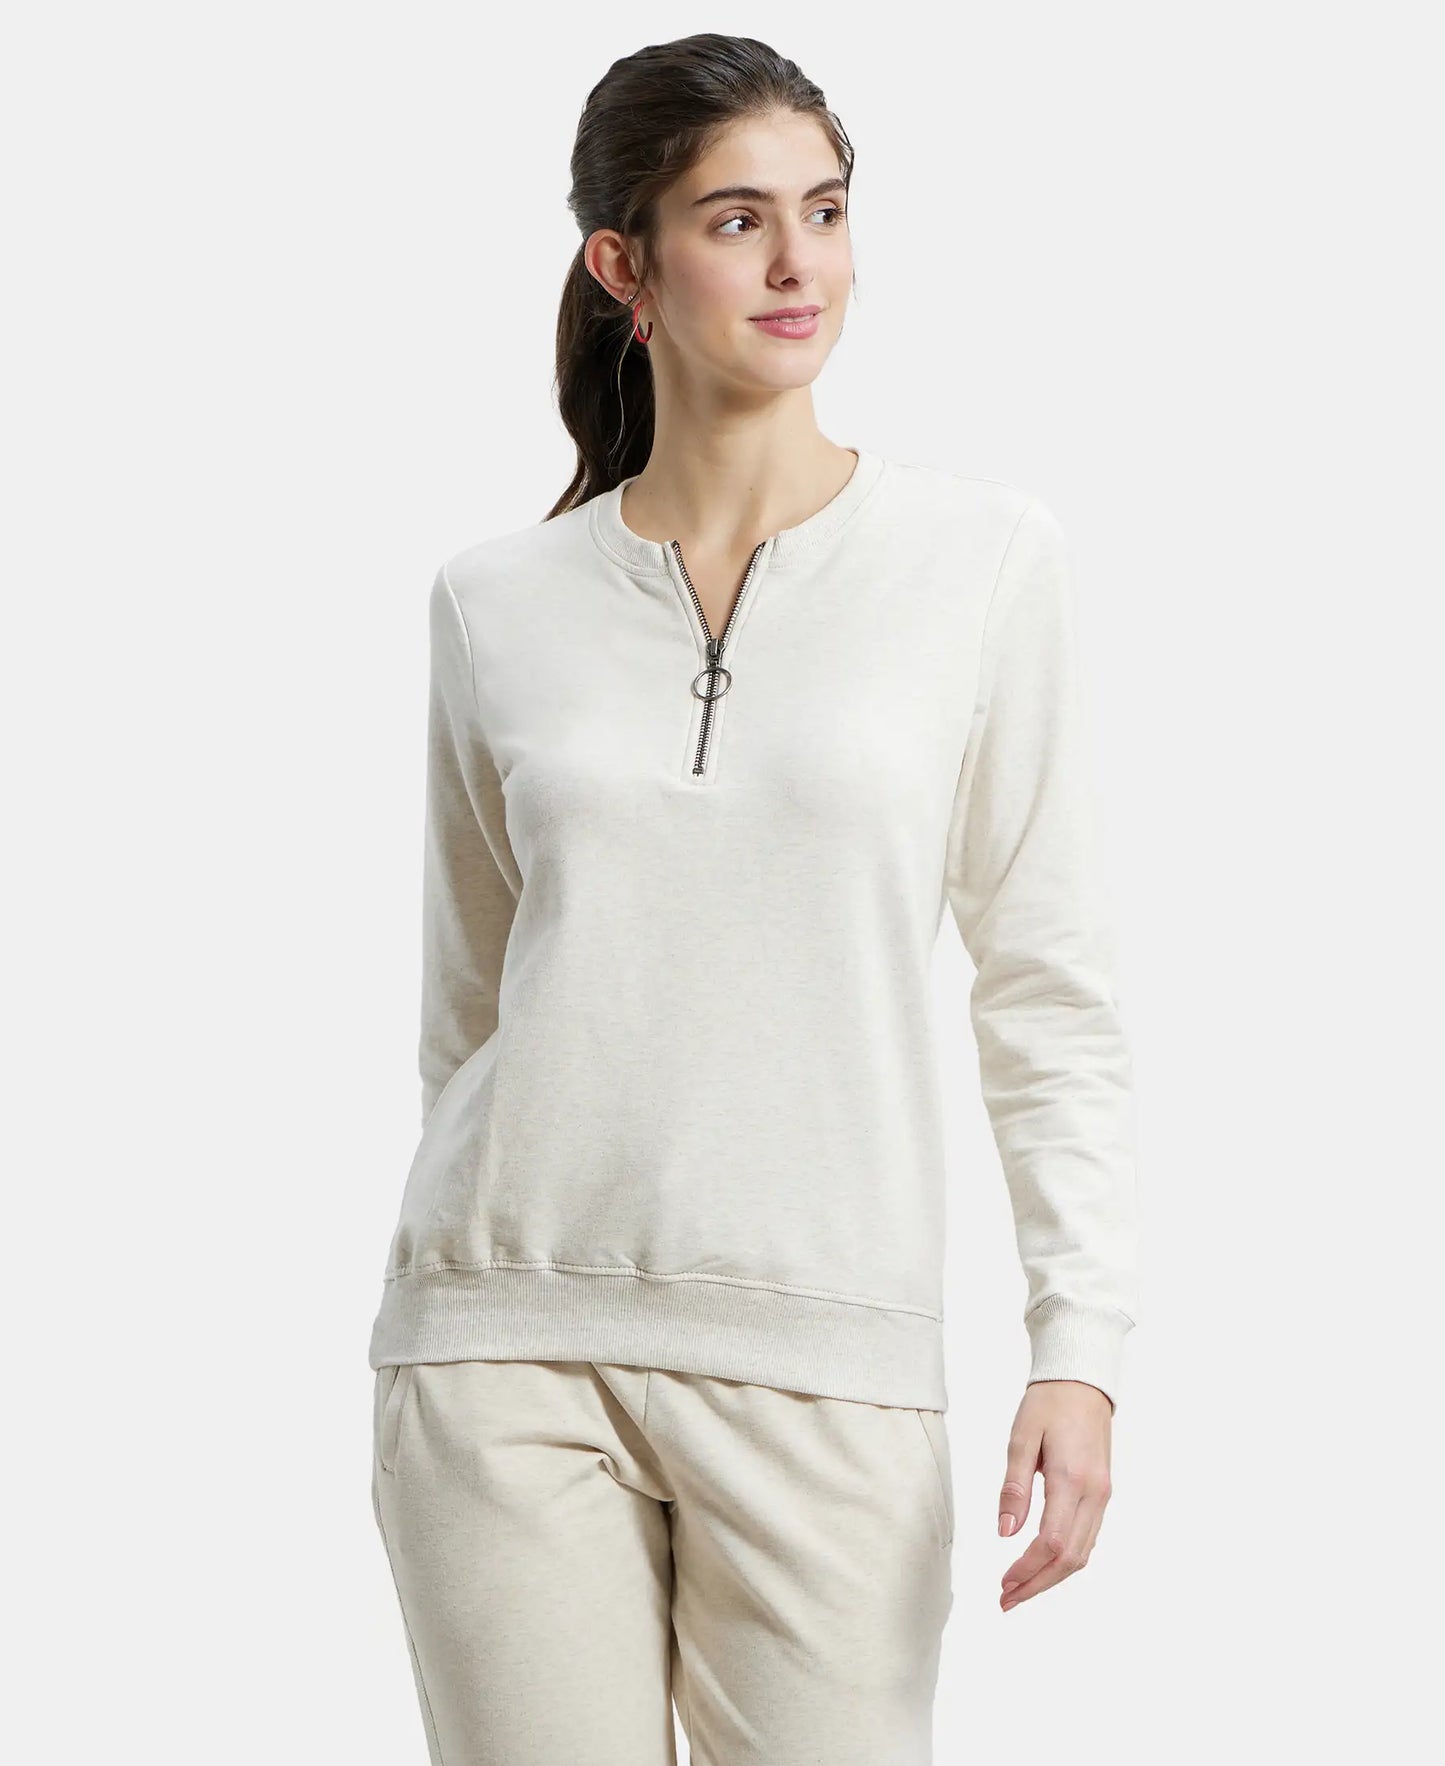 Super Combed Cotton Elastane Stretch Melange Sweatshirt with Round Neck Half Zip - Cream Melange-1